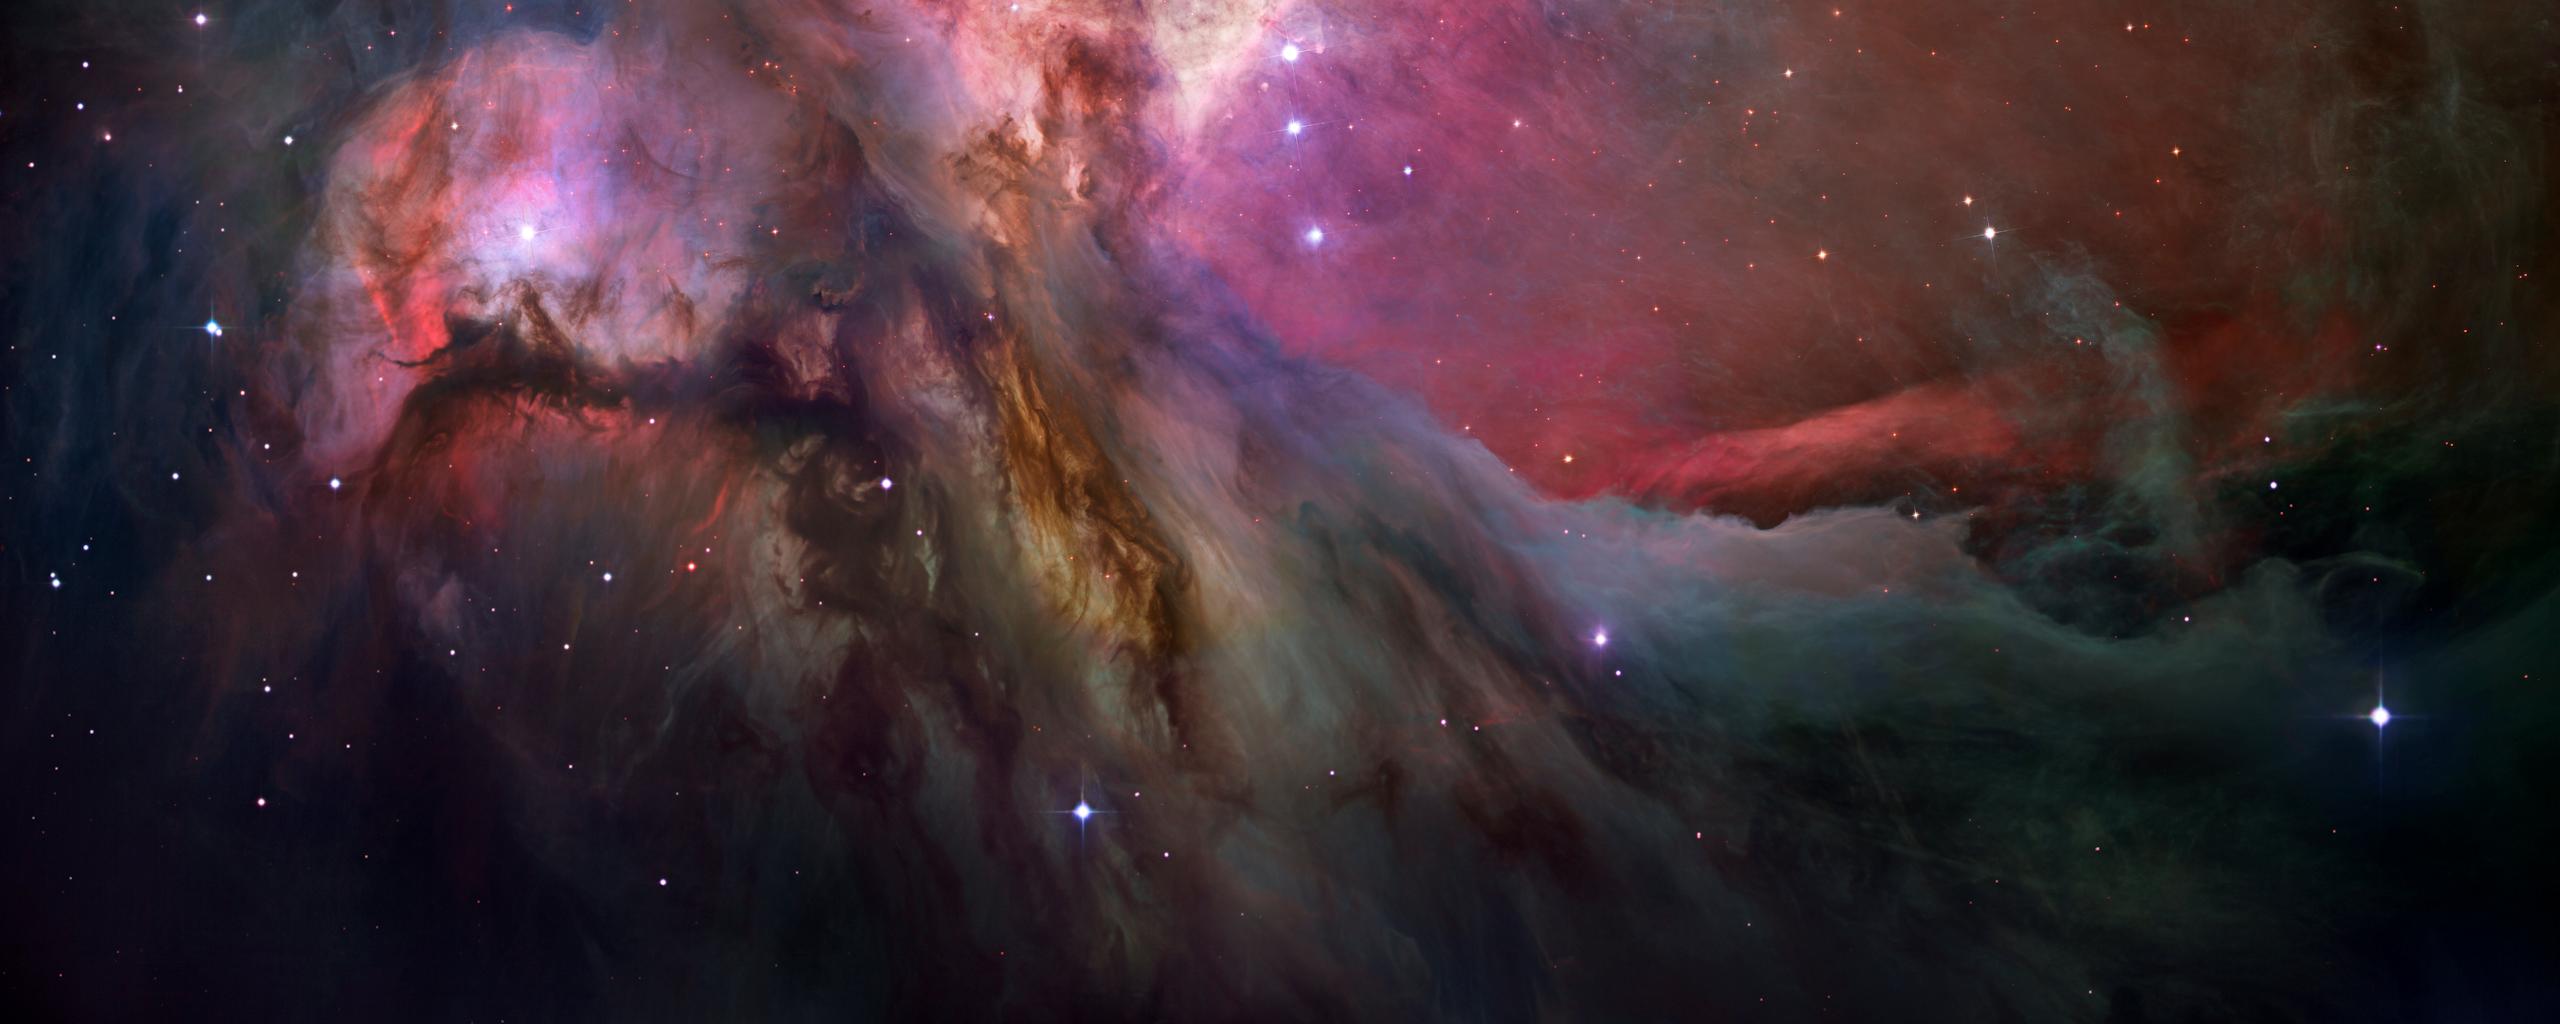 Descargar fondos de escritorio de Nebula De Orión HD